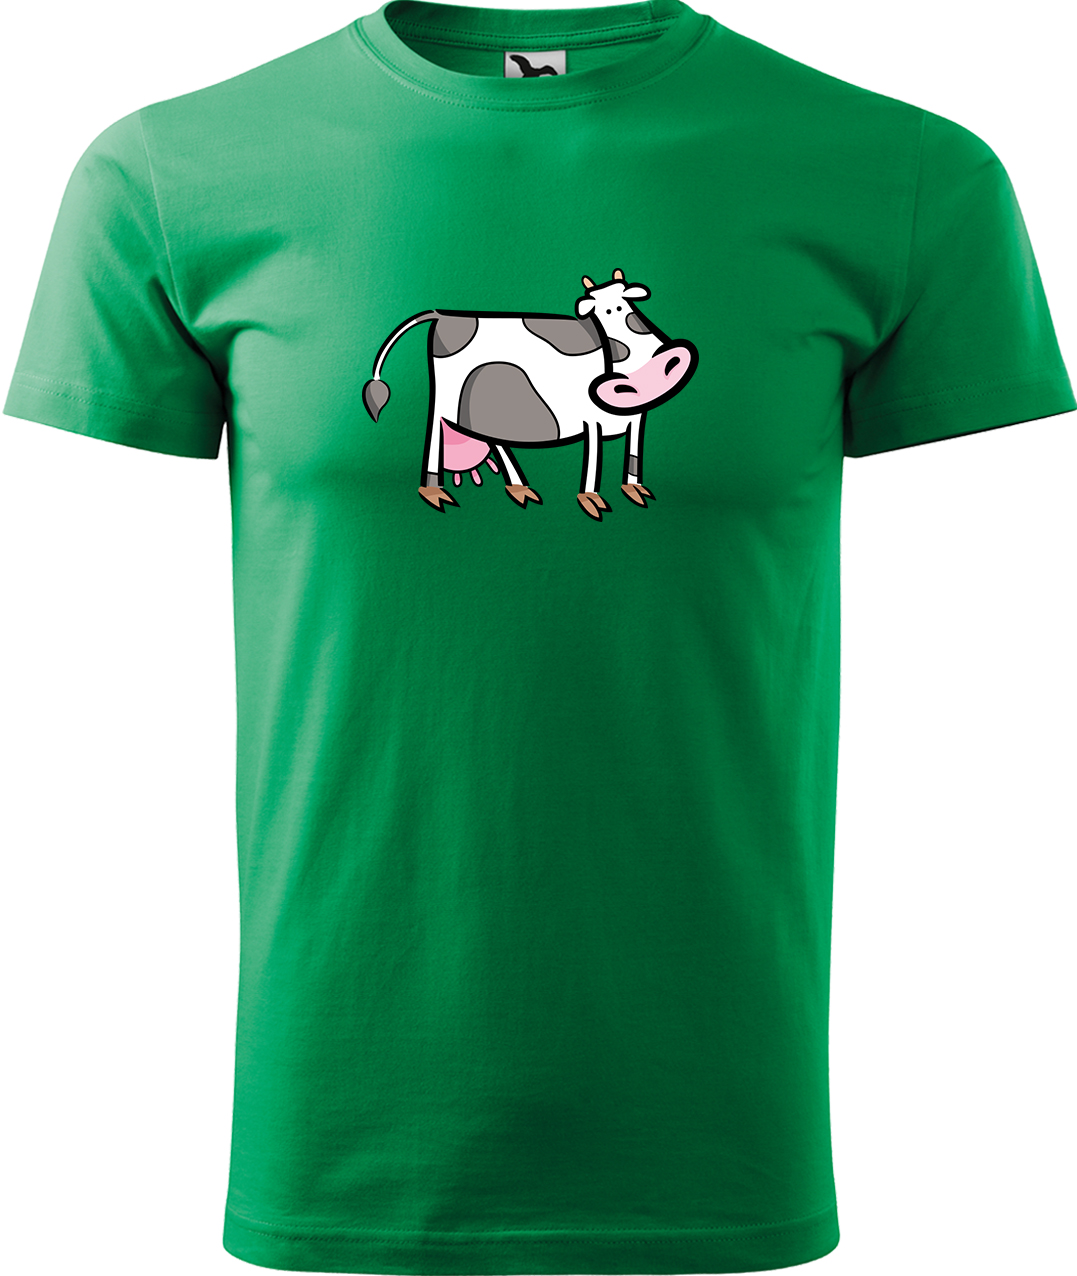 Pánské tričko s krávou - Kravička Velikost: 2XL, Barva: Středně zelená (16), Střih: pánský